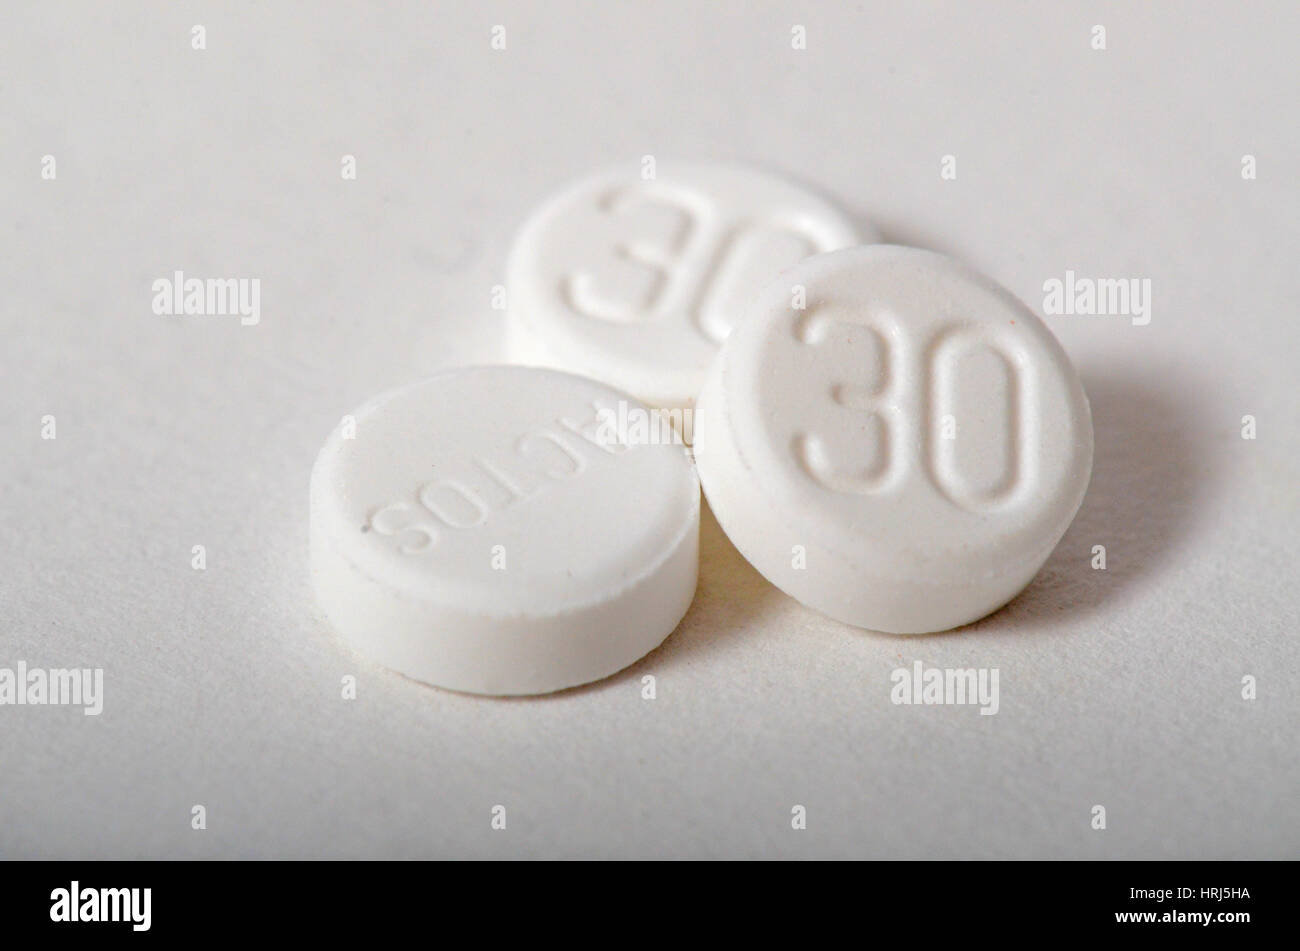 Actos, Medikament gegen Diabetes Typ II Stockfotografie - Alamy